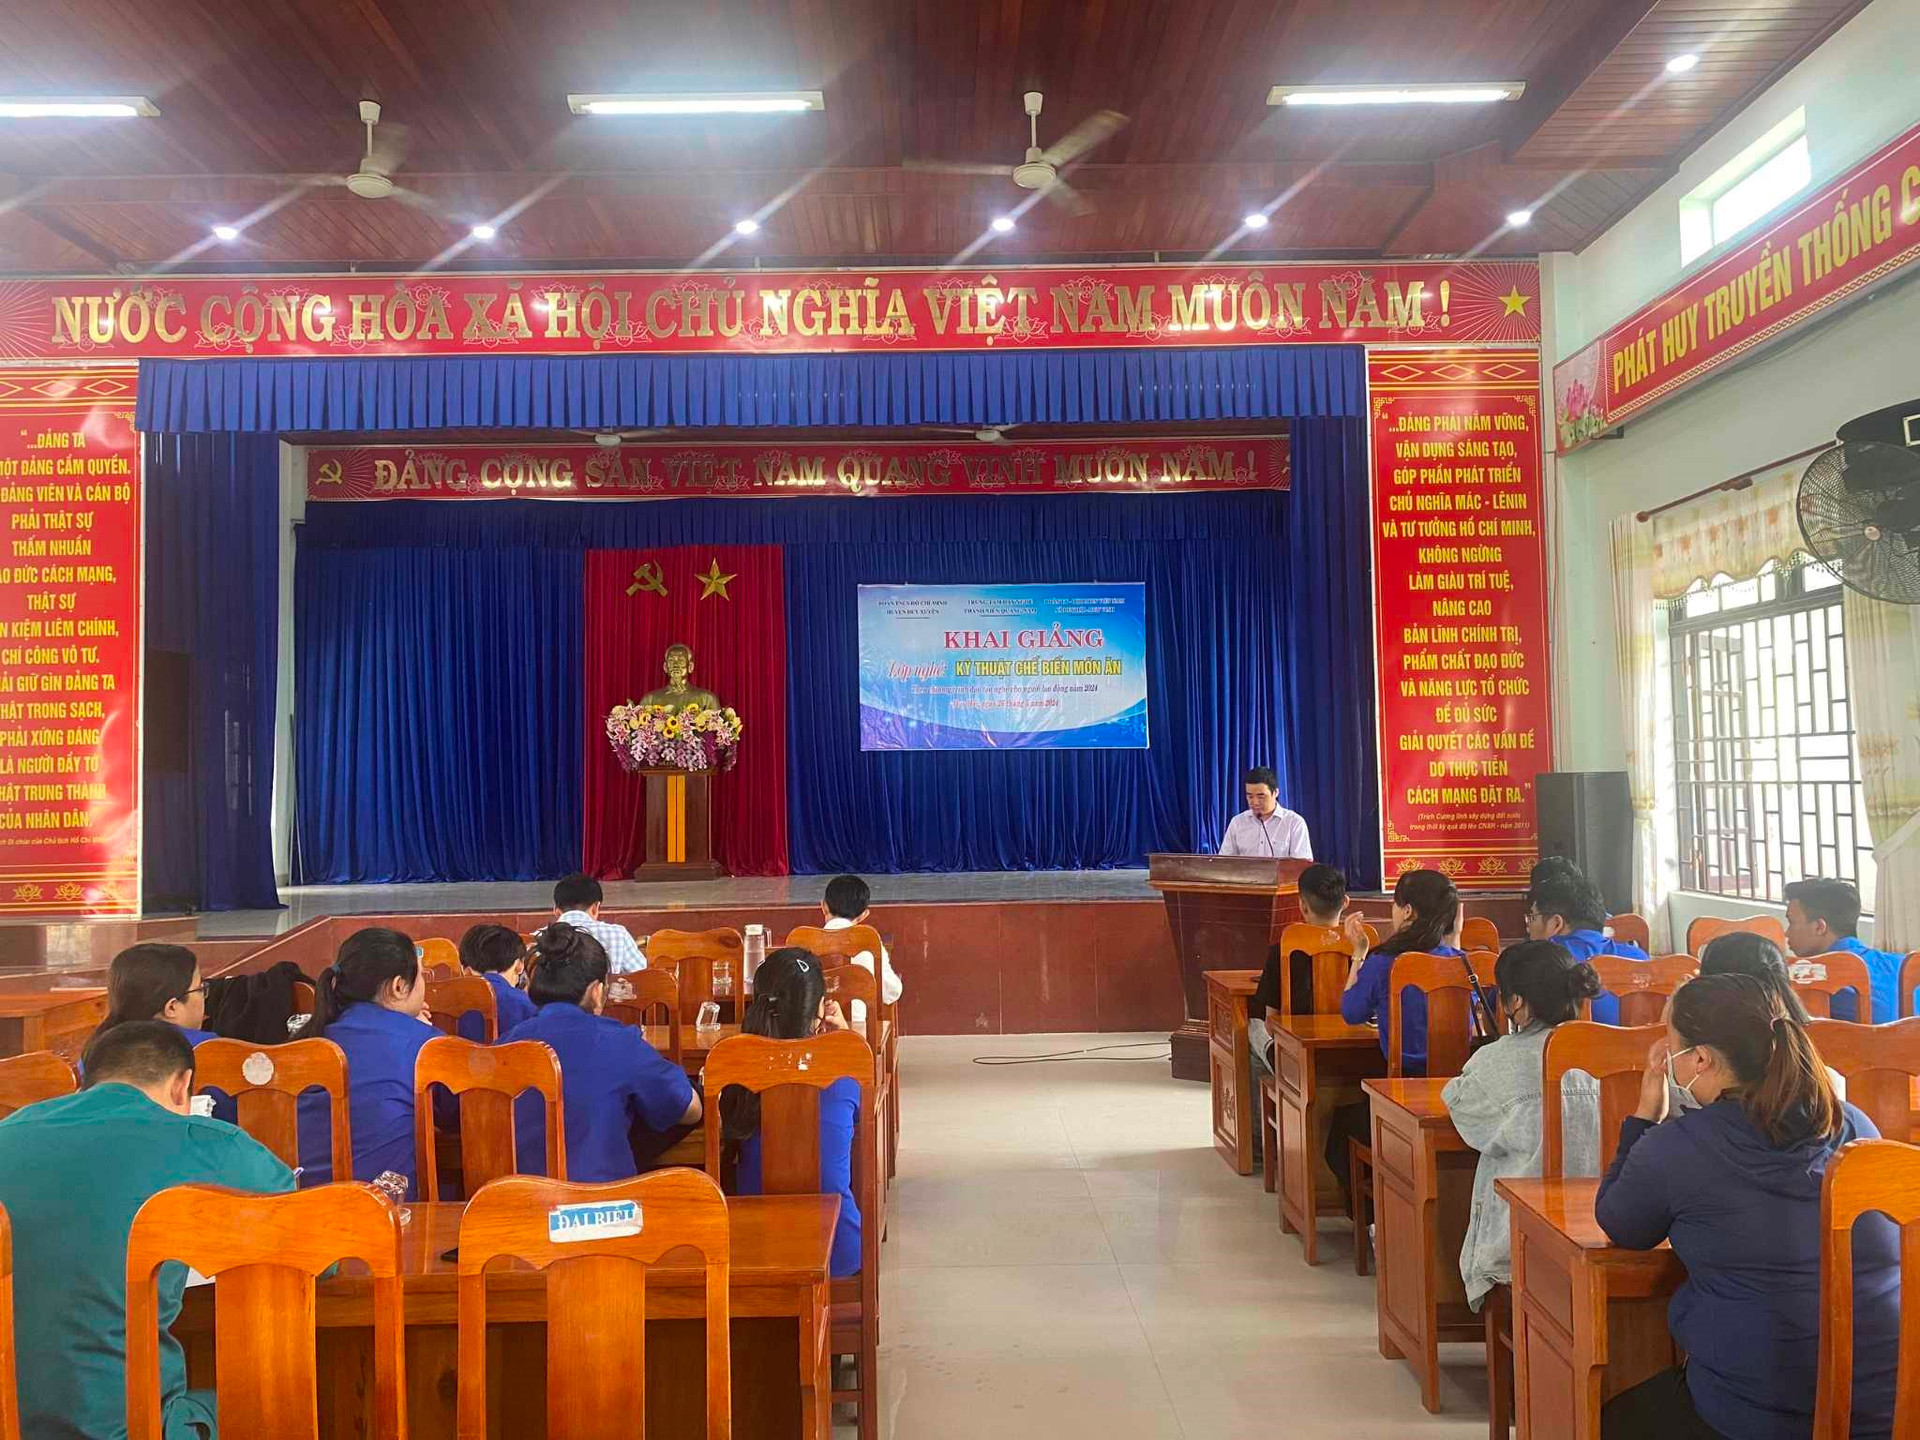 Khai giảng lớp nghề kỹ thuật chế biến món ăn tại huyện Duy Xuyên